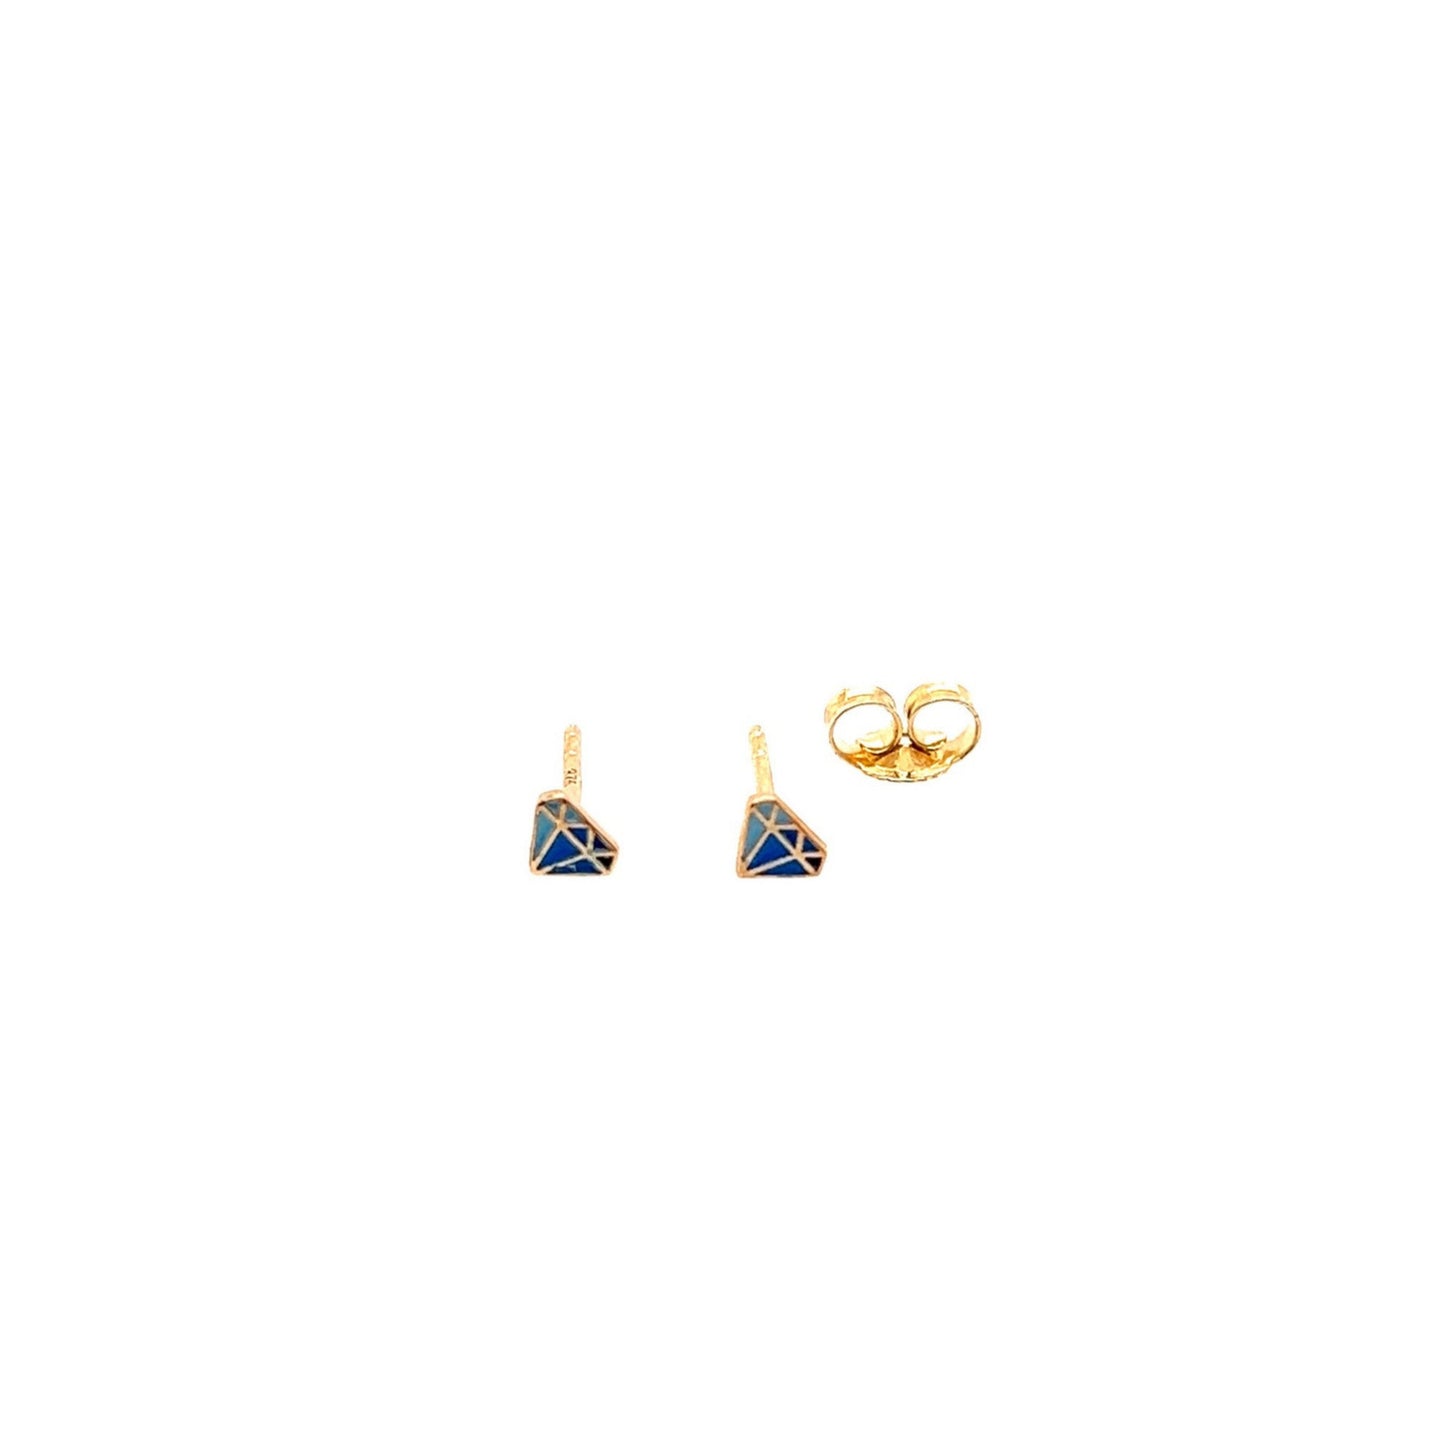 Metier 9KT Yellow Gold Blue Enamel Diamond Shape Stud Earring Pair